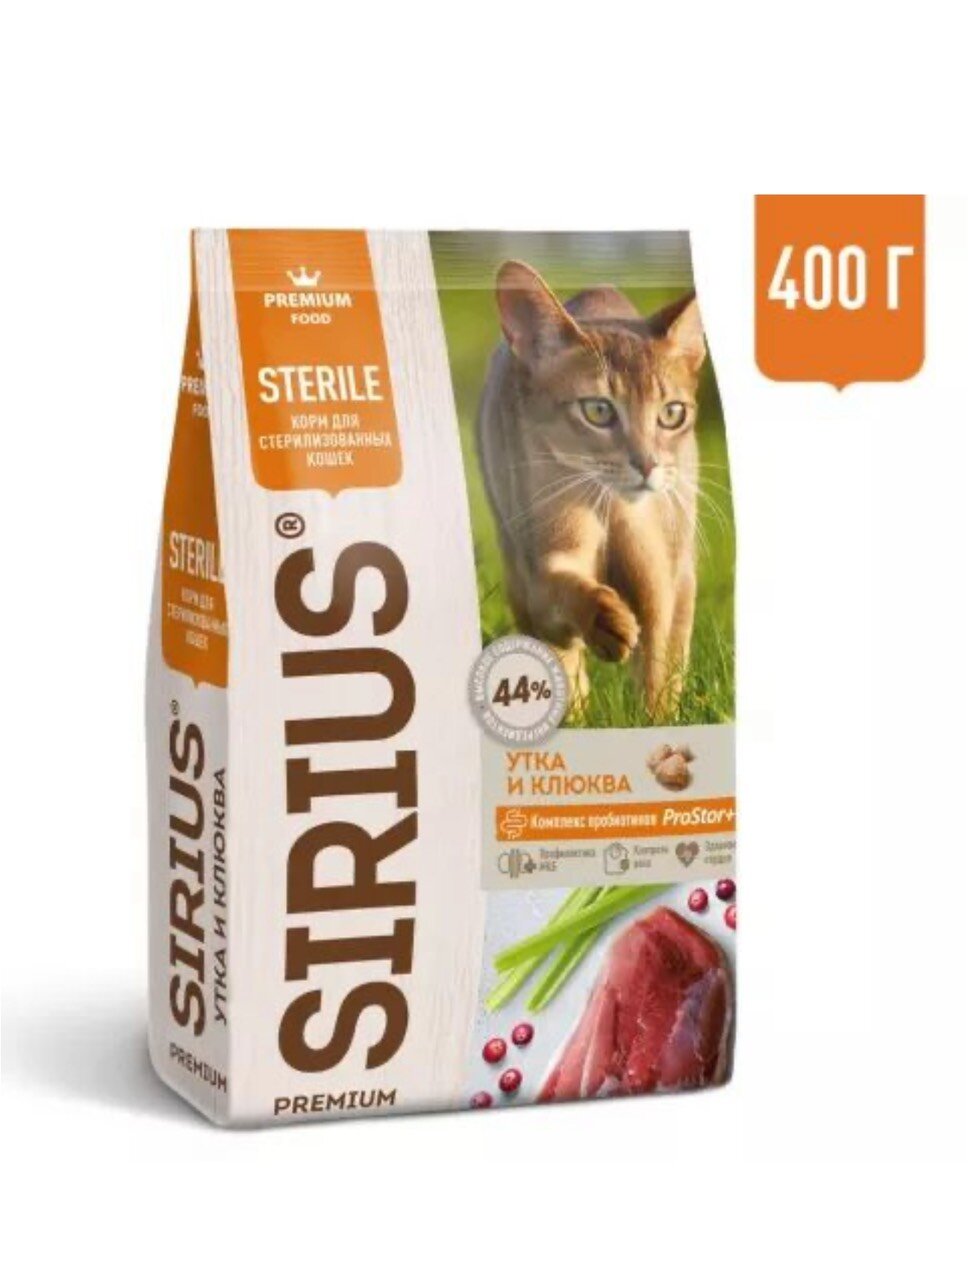 Сухой корм Sirius для стерилизованных кошек с уткой и клюквой, 400 гр